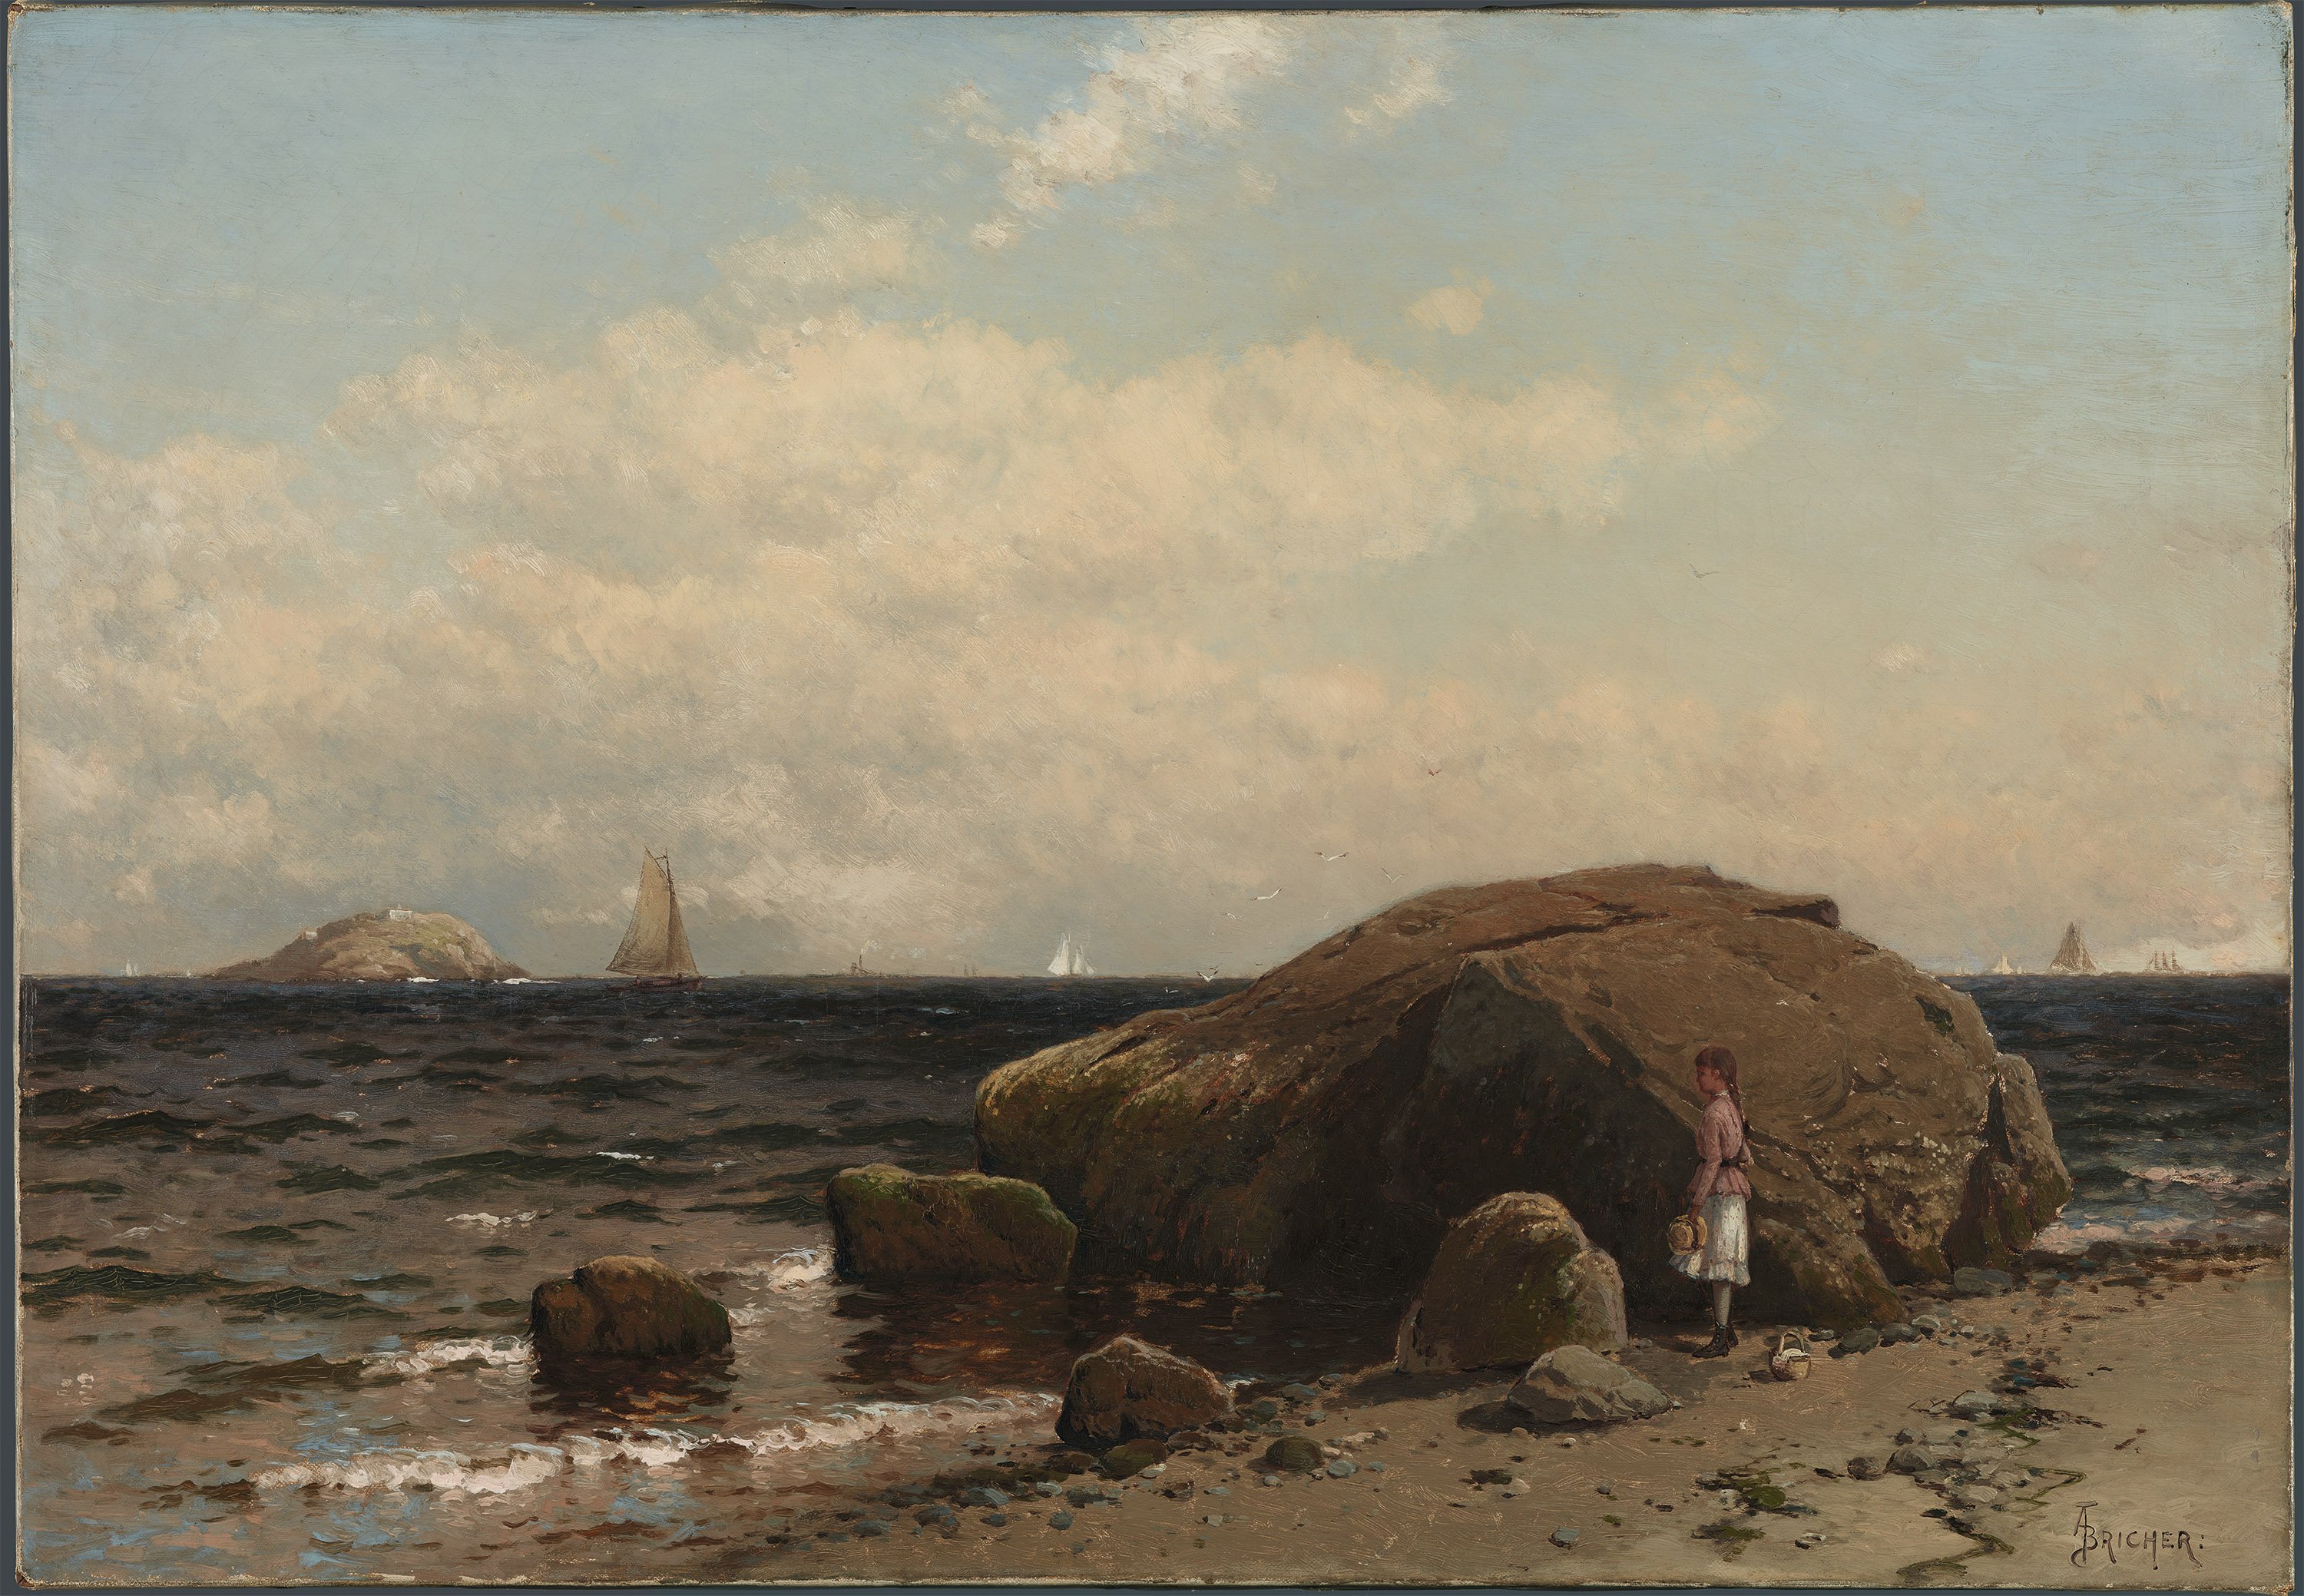 Looking out to Sea. Contemplando el mar, c. 1885